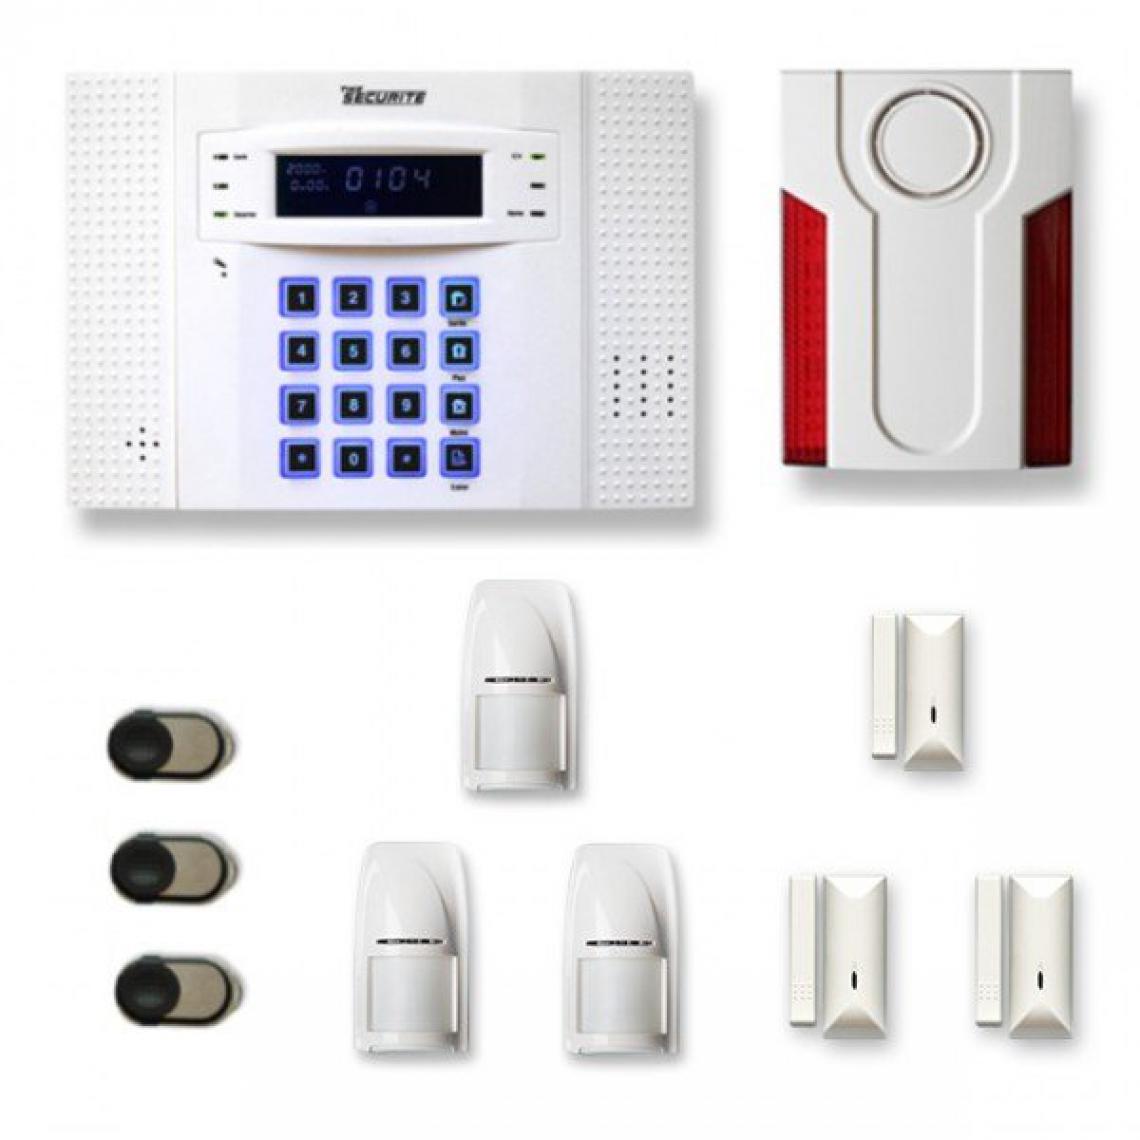 Tike Securite - Alarme maison sans fil DNB28 Compatible Box internet et GSM - Alarme connectée